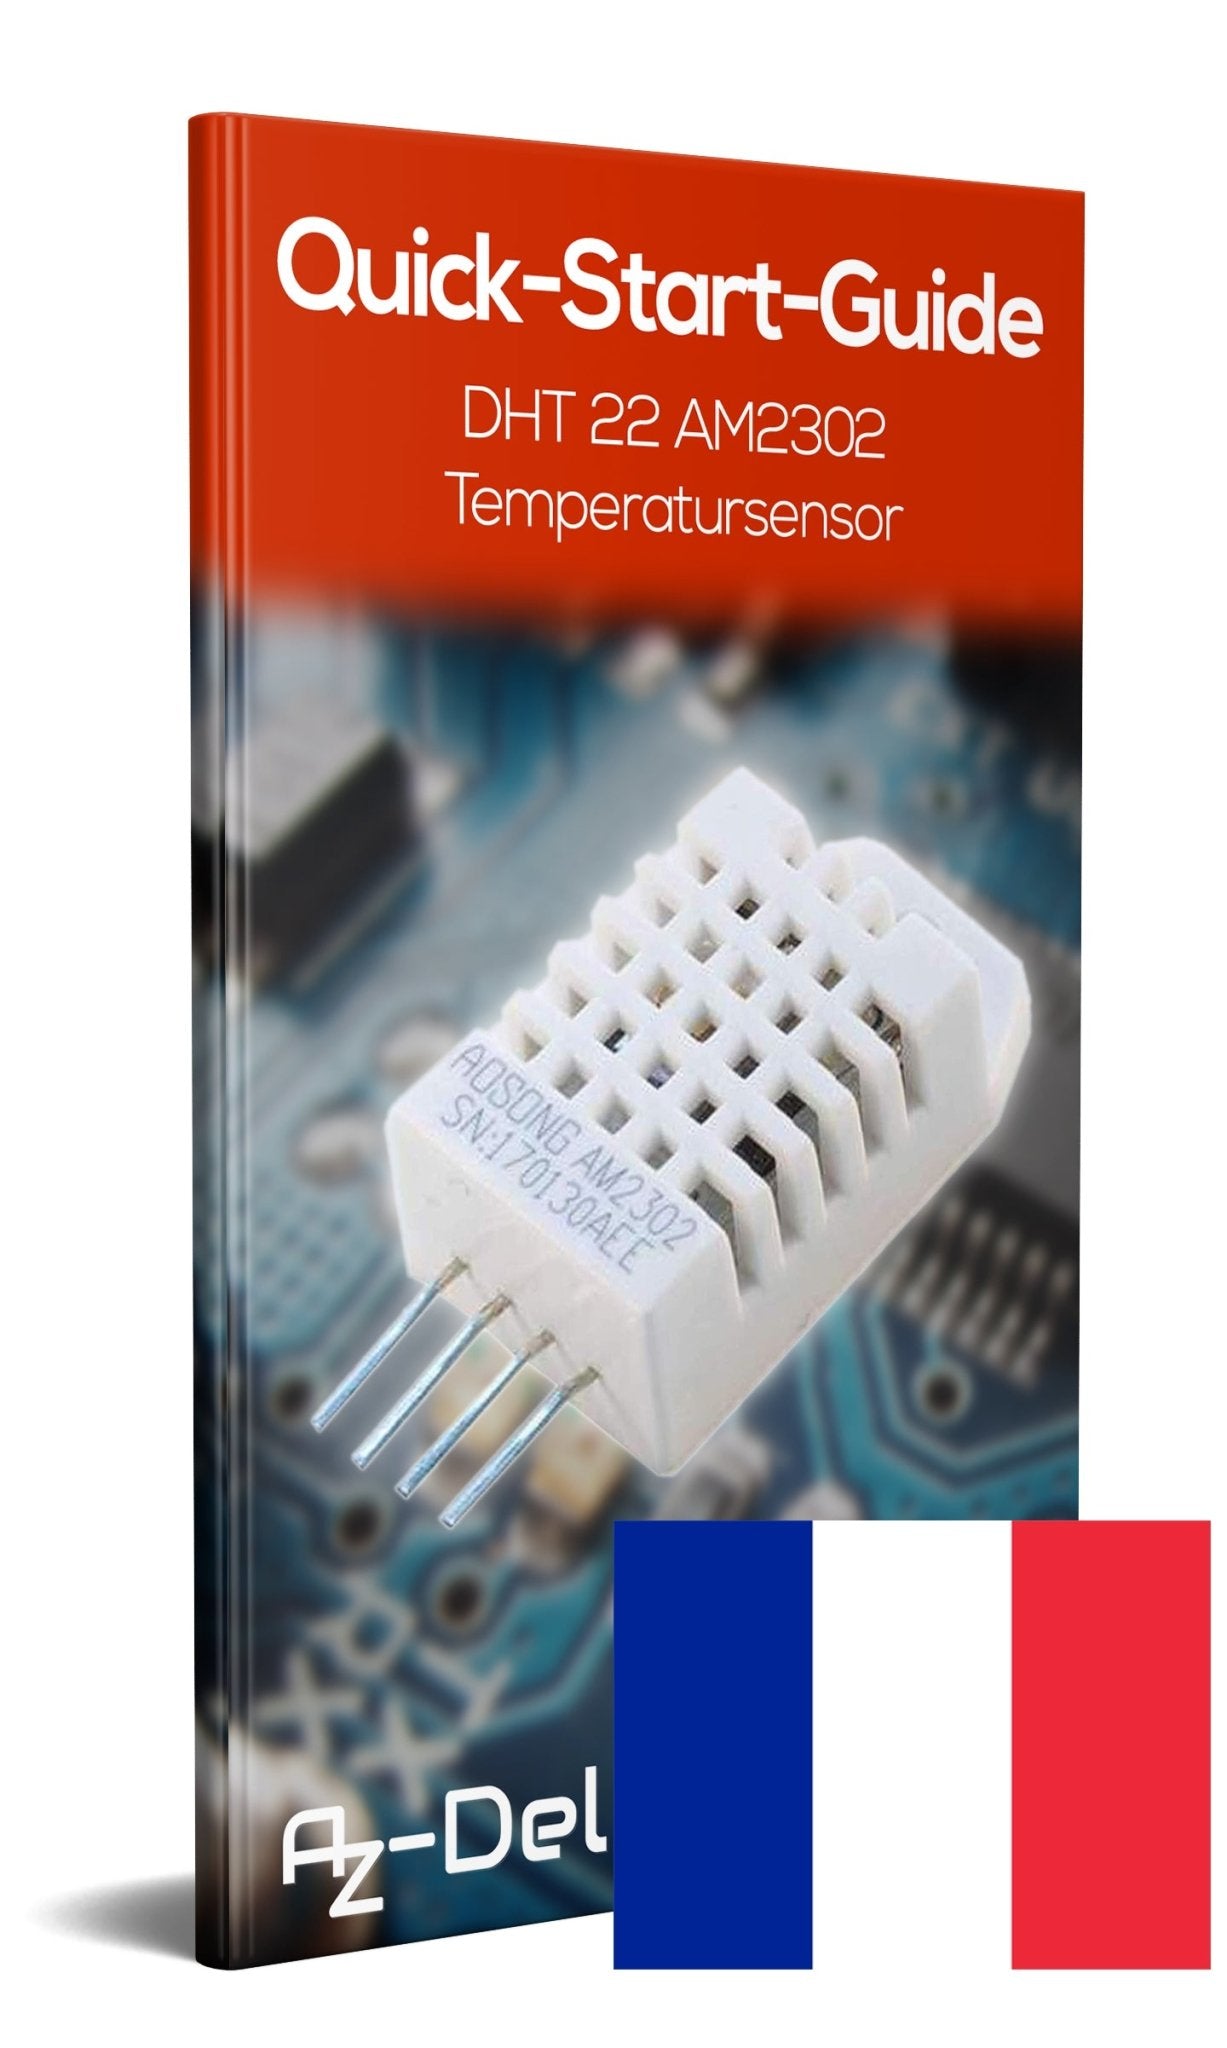 DHT22 AM2302 Temperatursensor und Luftfeuchtigkeitssensor - AZ-Delivery